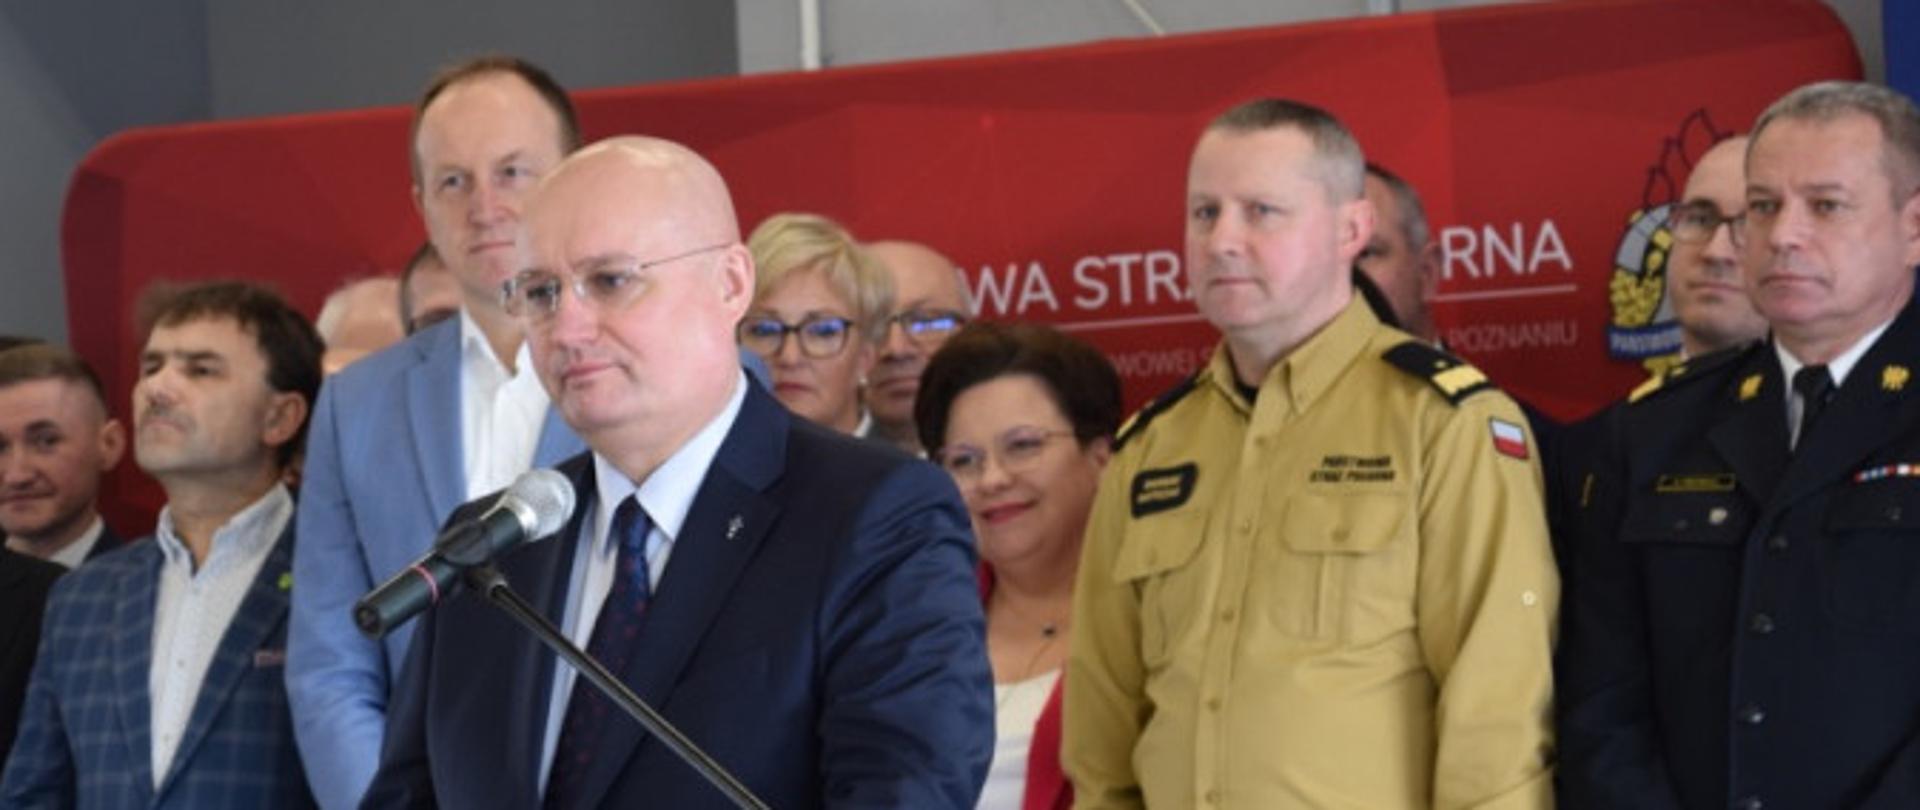 duża grupa kobiet i mężczyzn stoi przed czerwonym banerem, przed nimi mężczyzna w okularach i garniturze stoi przy mównicy